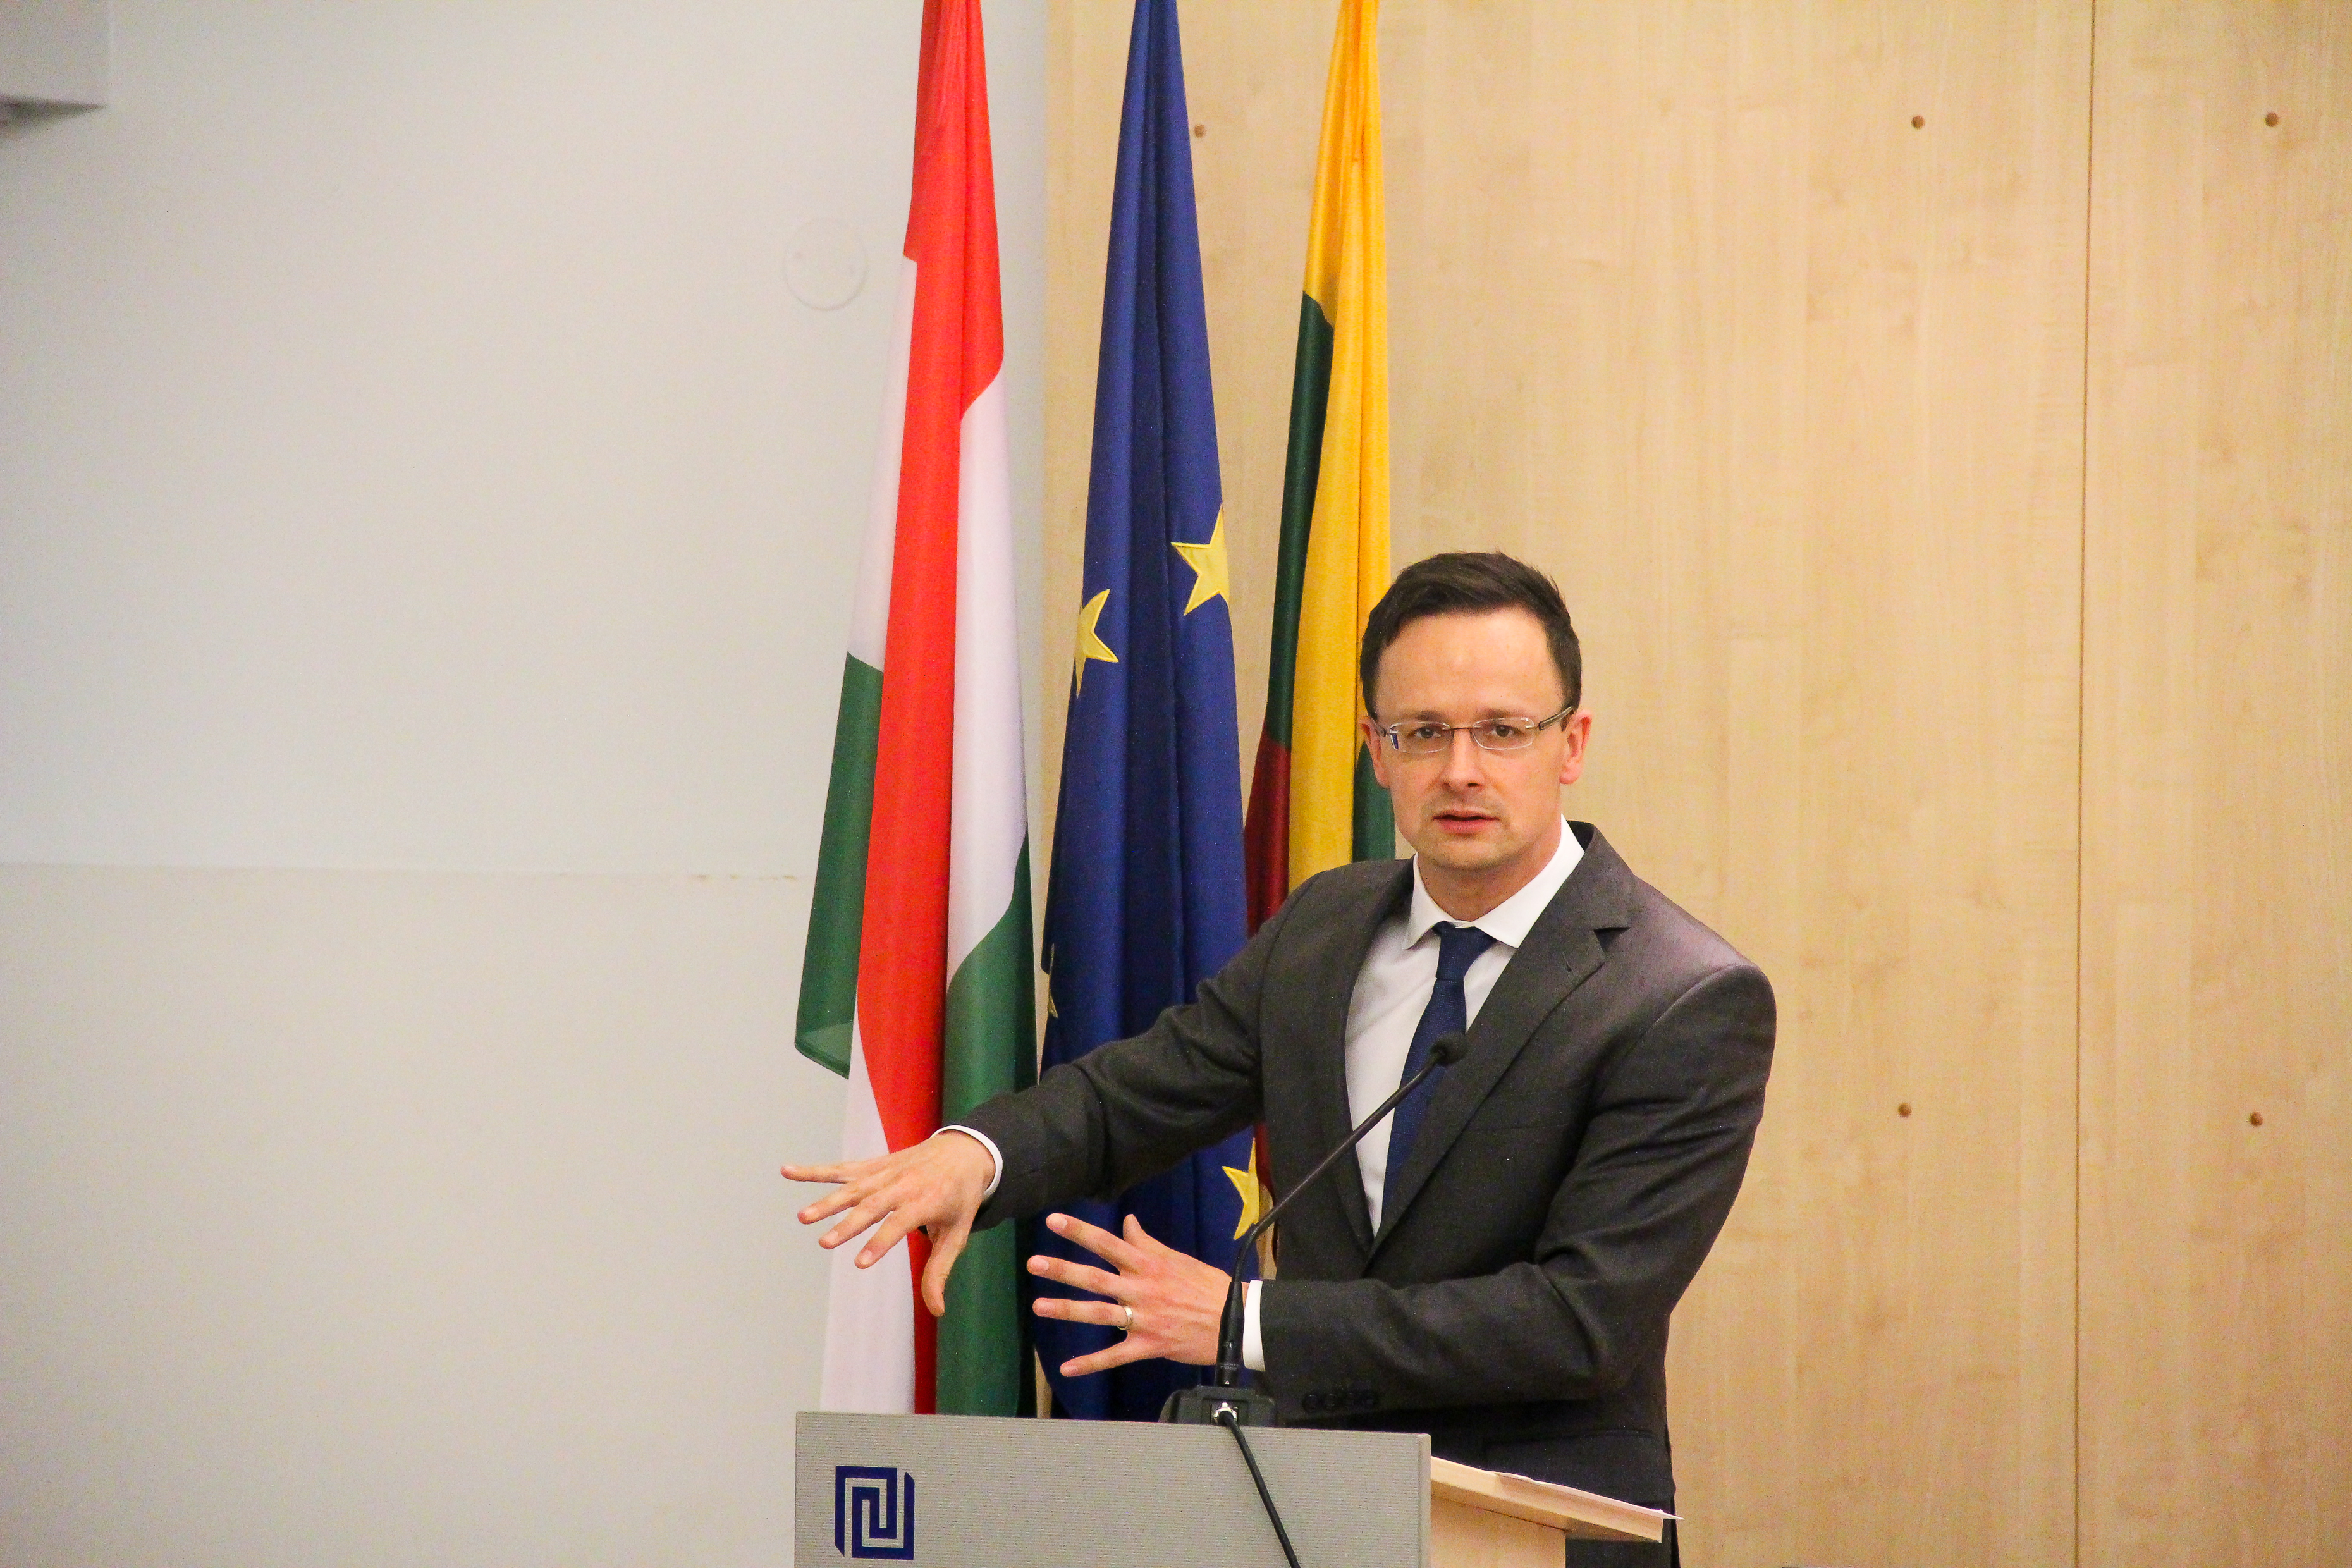 Vengrijos užsienio reikalų ministro Péter Szijjártó paskaita „Višegrado grupė: regioninė vertybių sanglauda ir atitikimas Europos Sąjungos sistemai“